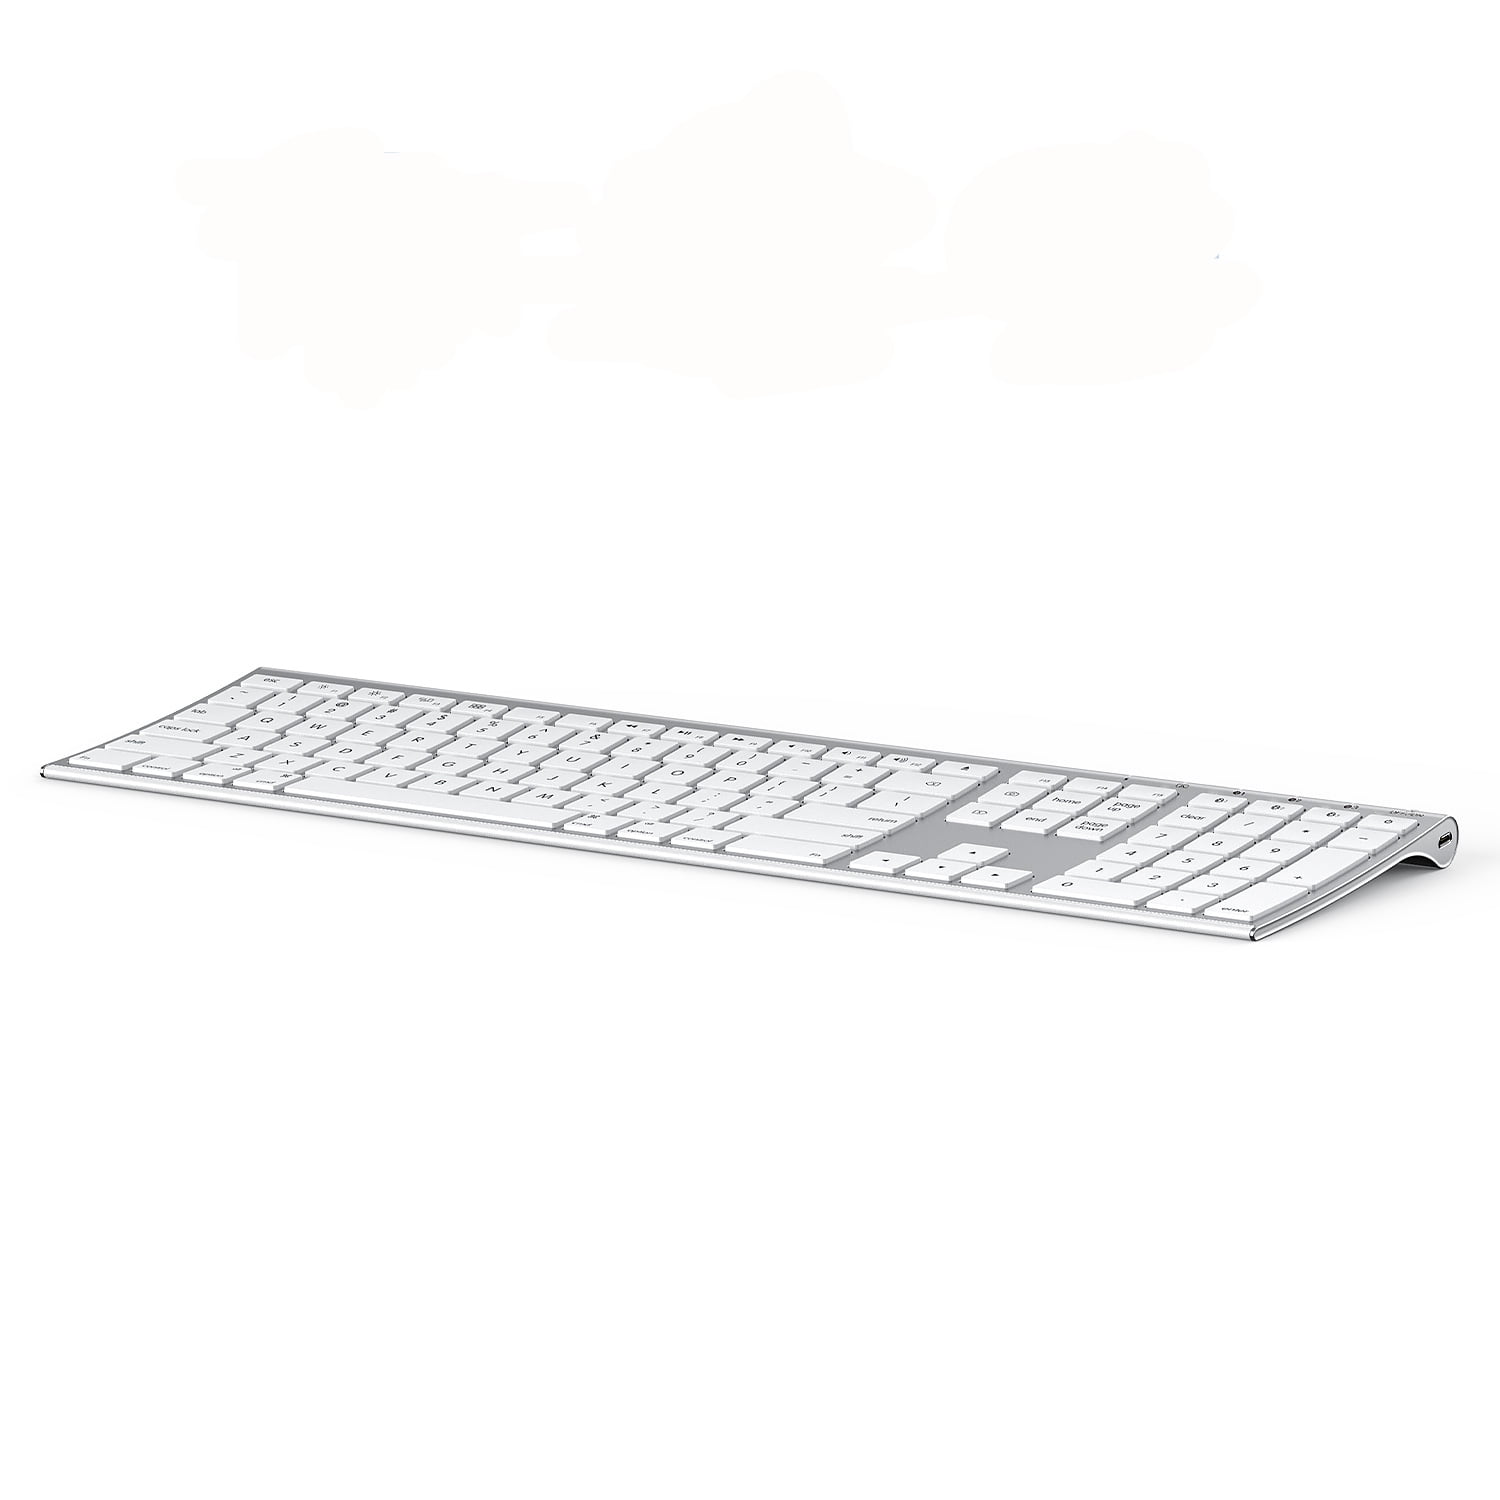 Space Gary teclado de tamaño completo QWERTY para iPad/MacBook/iPhone Mac OS X/iOS/Apple OS Jelly Comb Teclado inalámbrico Bluetooth recargable